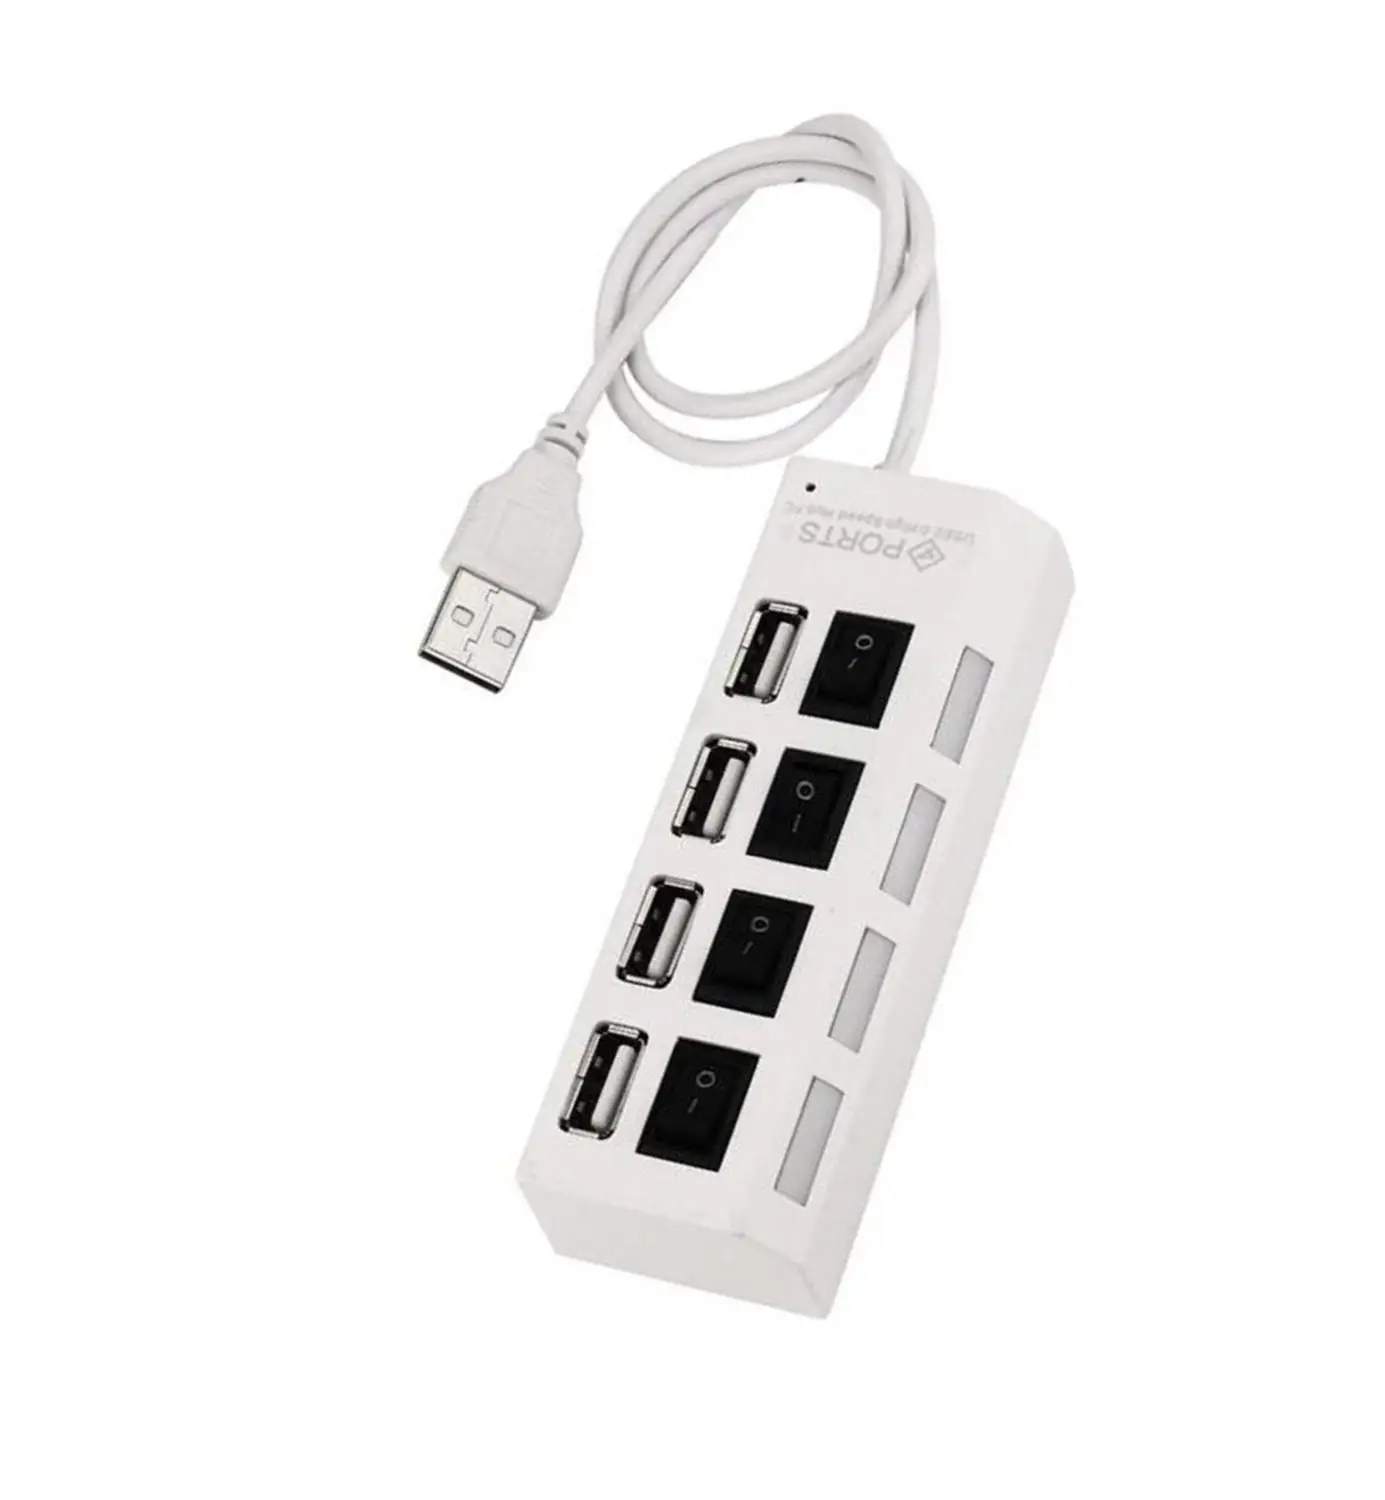 7 портов светодиодный USB 2,0 адаптер концентратор питания вкл/выкл переключатель для ПК ноутбук с системой windows